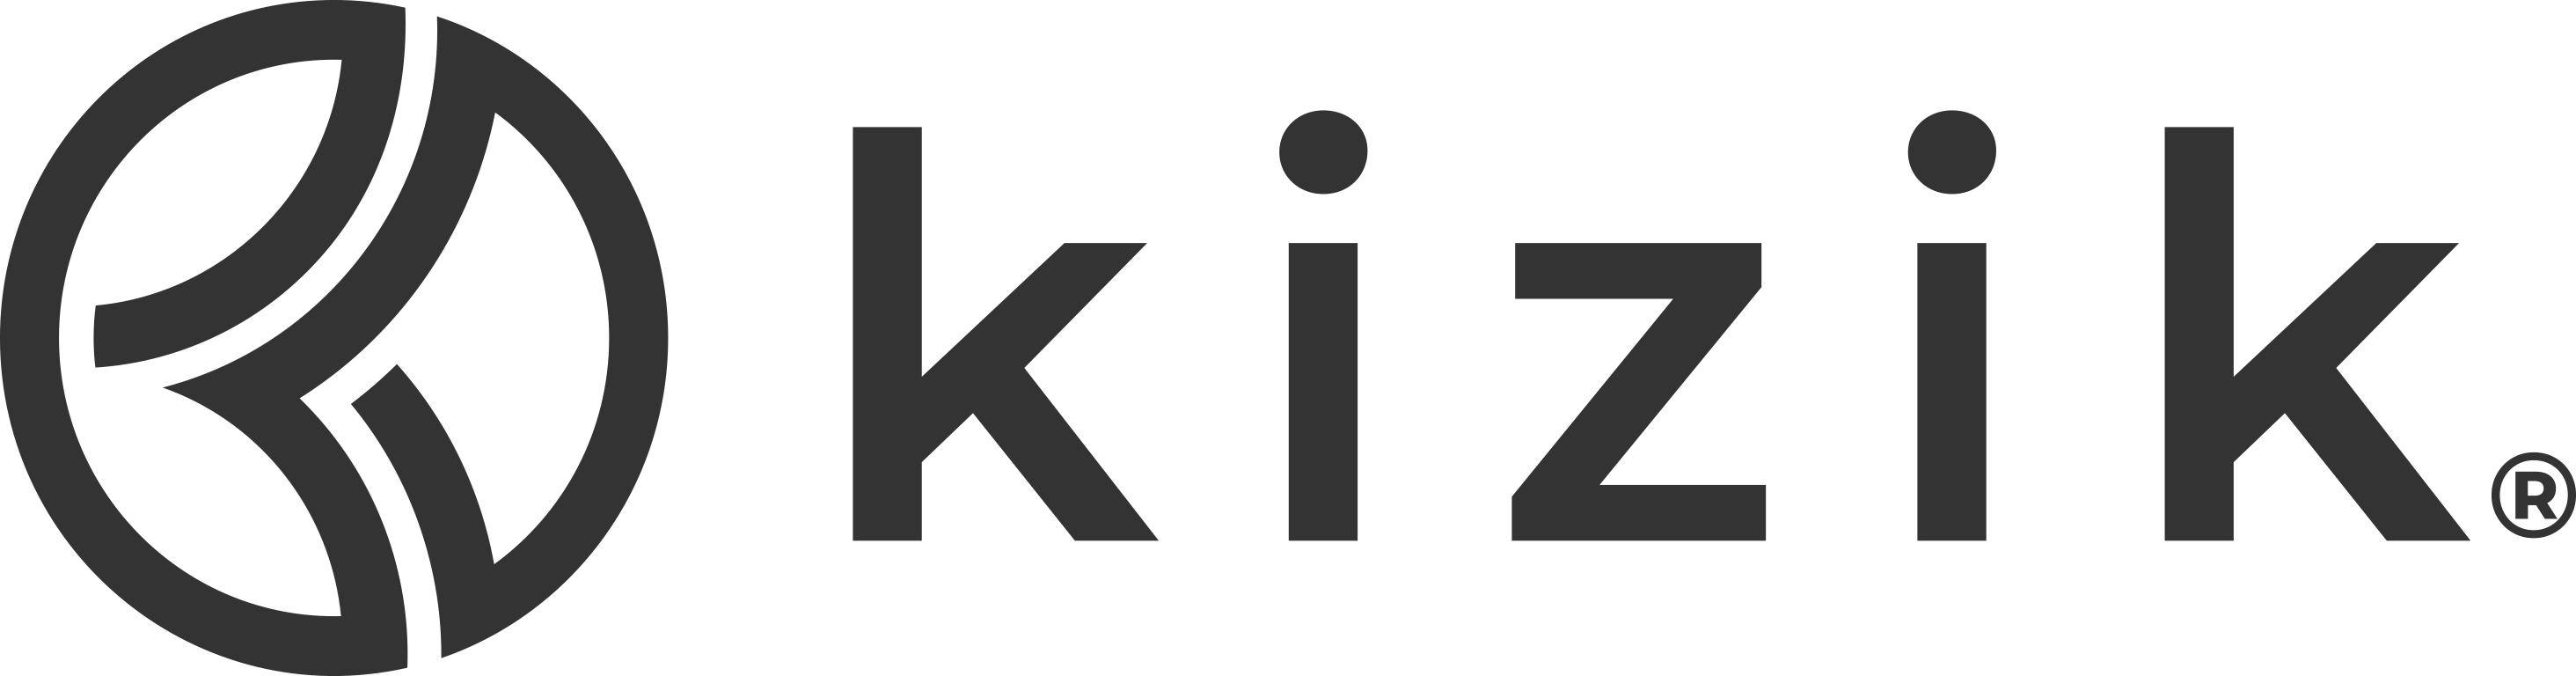 kizik logo black